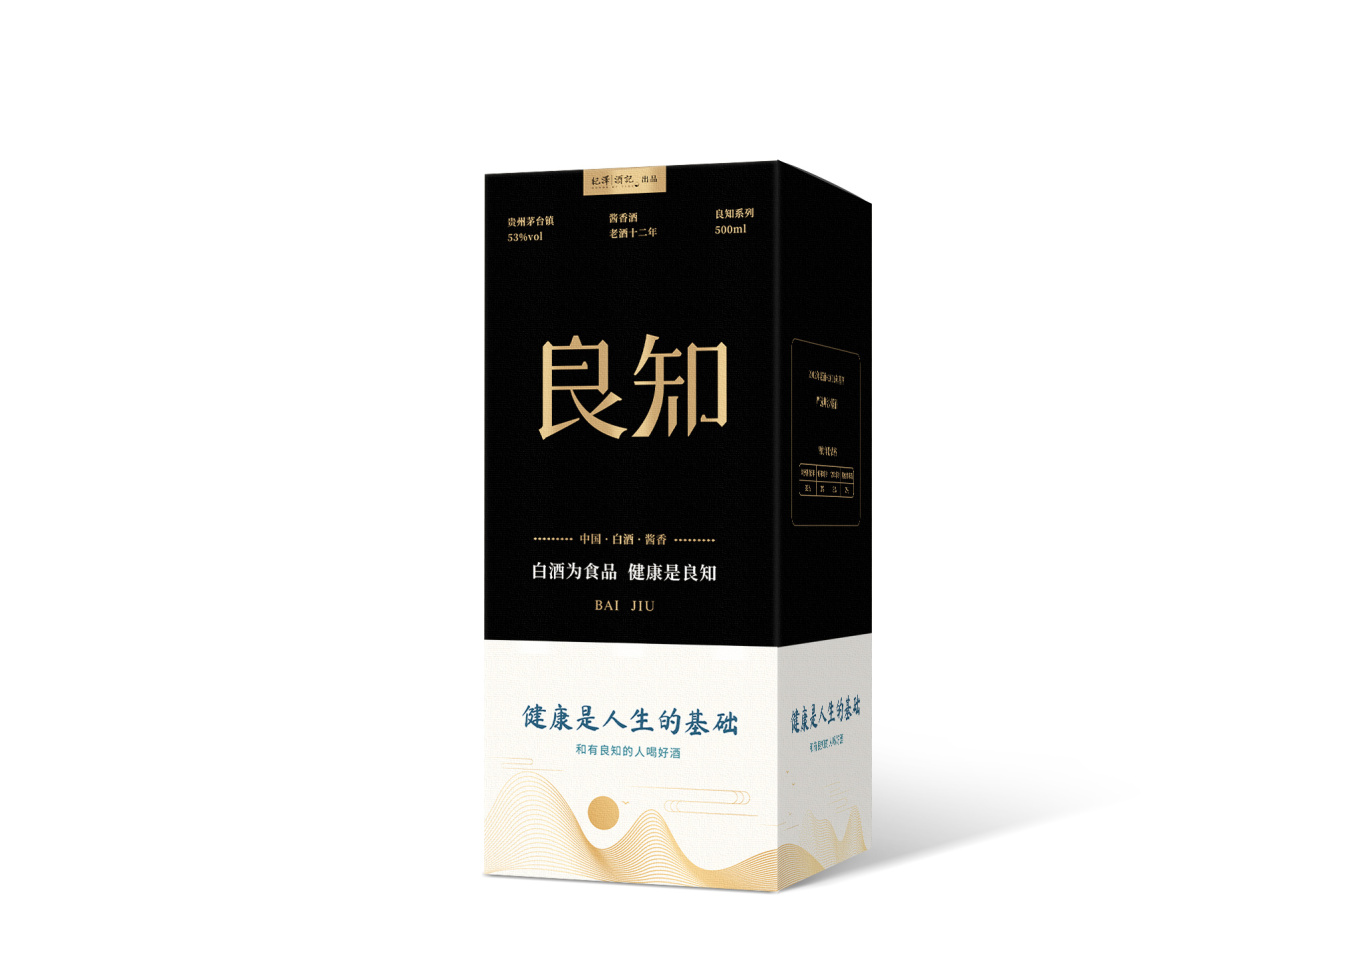 紀澤系列醬香酒包裝設計圖7